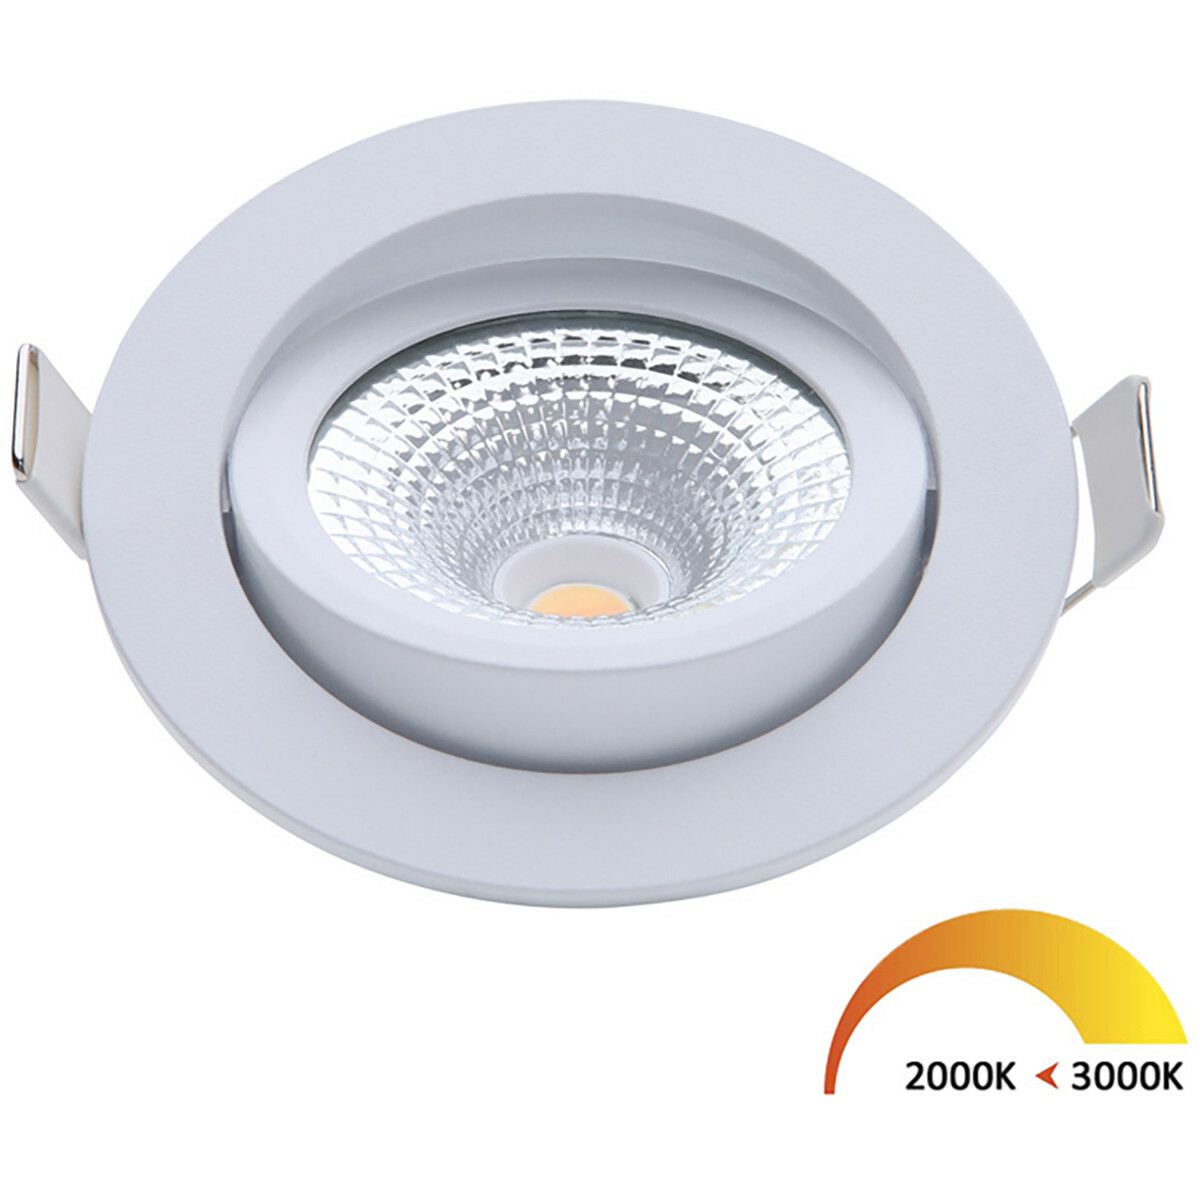 Ontoegankelijk kiespijn versus EcoDim - LED Spot - Inbouwspot - ED-10022 - 5W - Waterdicht IP54 - Dimbaar  - Dim to Warm - Warm Wit 2000K-3000K - Mat Wit - Aluminium - Rond -  Kantelbaar | BES LED